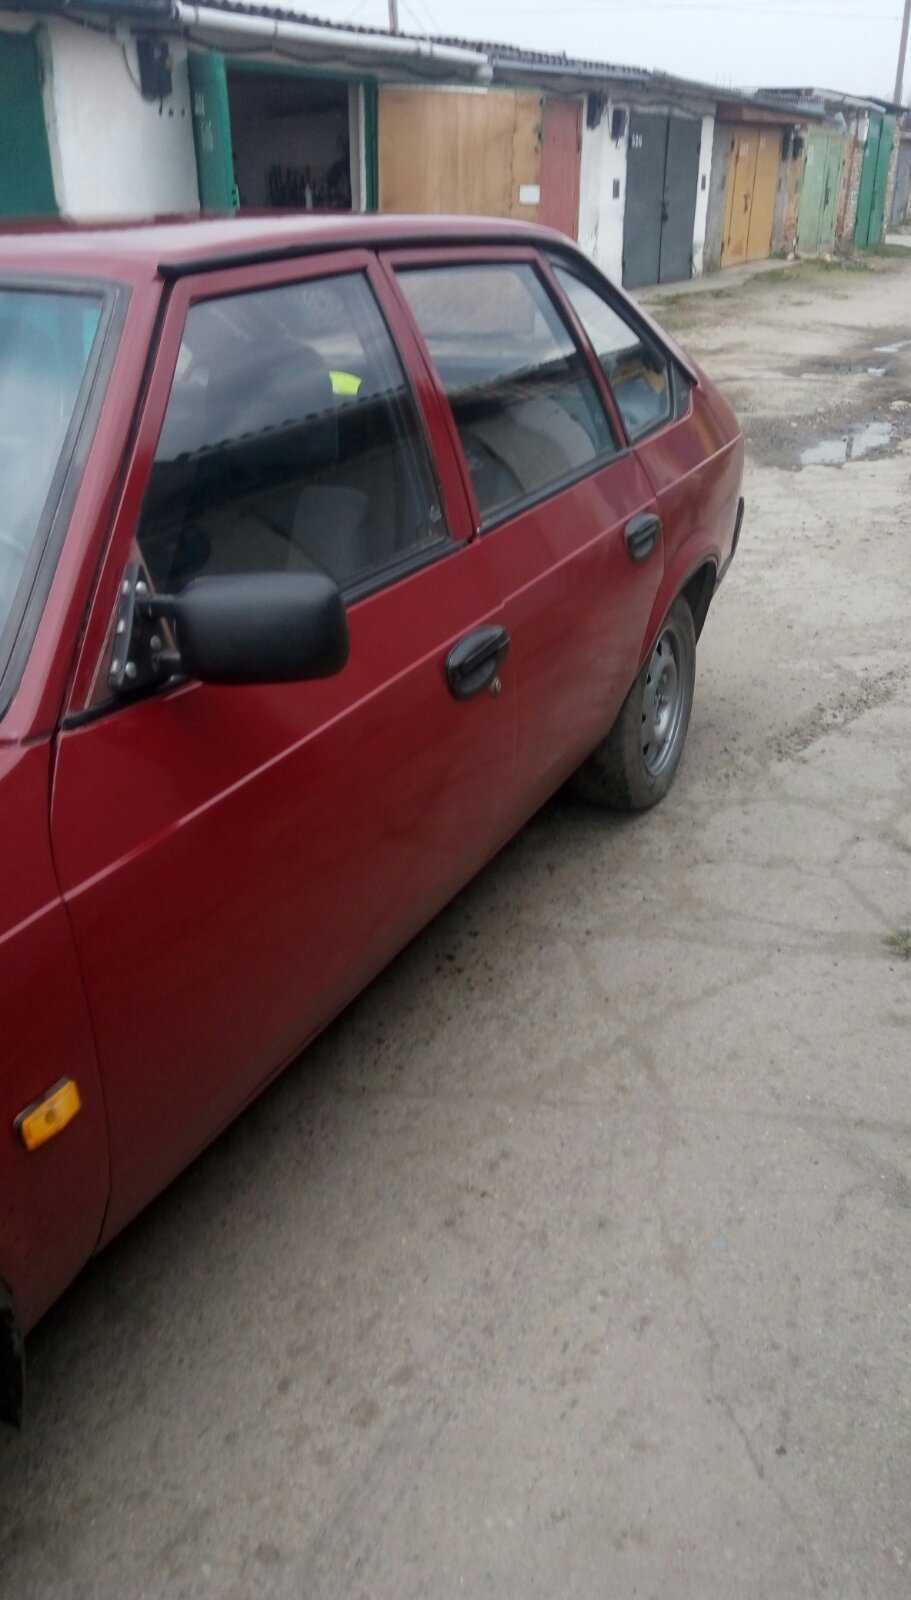 Червоний Москвич 2141, рік 1993, двигун 1,5л